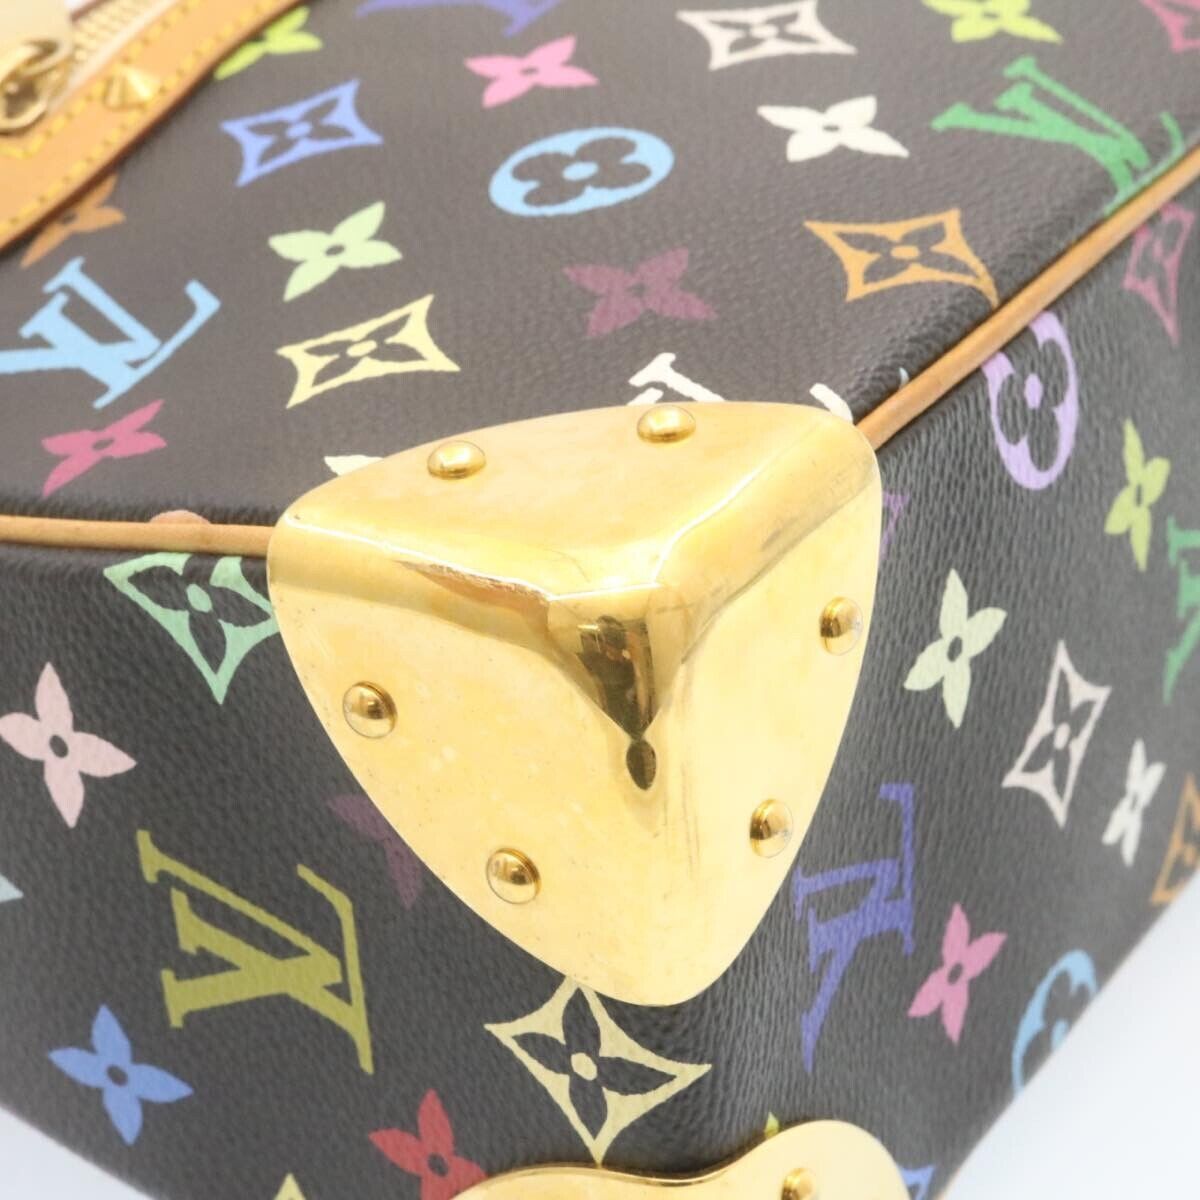 Surène bb leather handbag Louis Vuitton Multicolour in Leather - 30537997